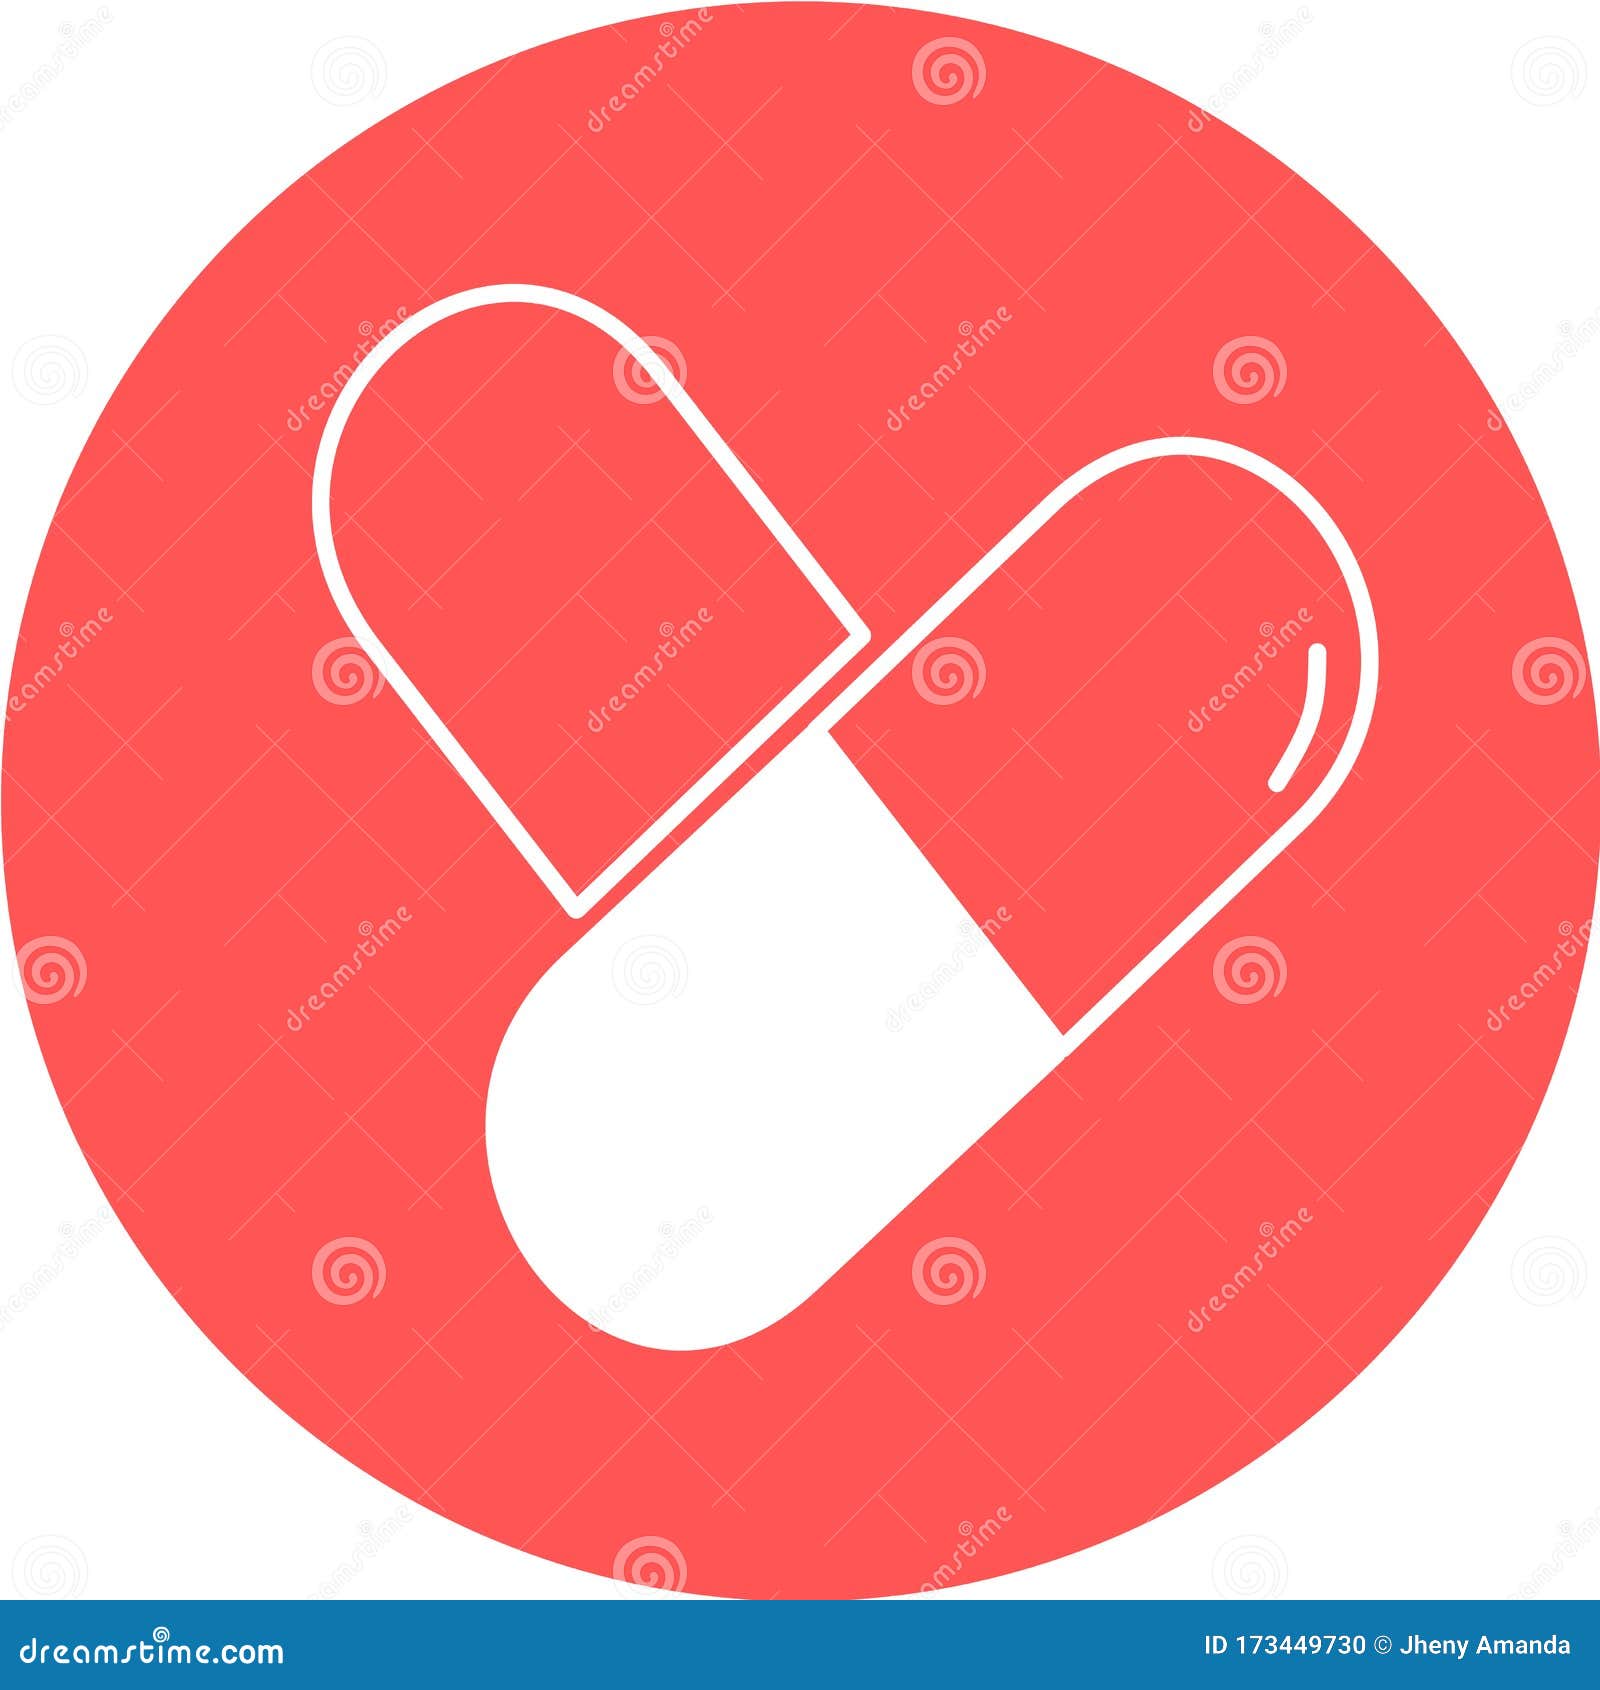 Uma Ilustração Vetorial Do Logotipo Para A Pílula De Medicamentos